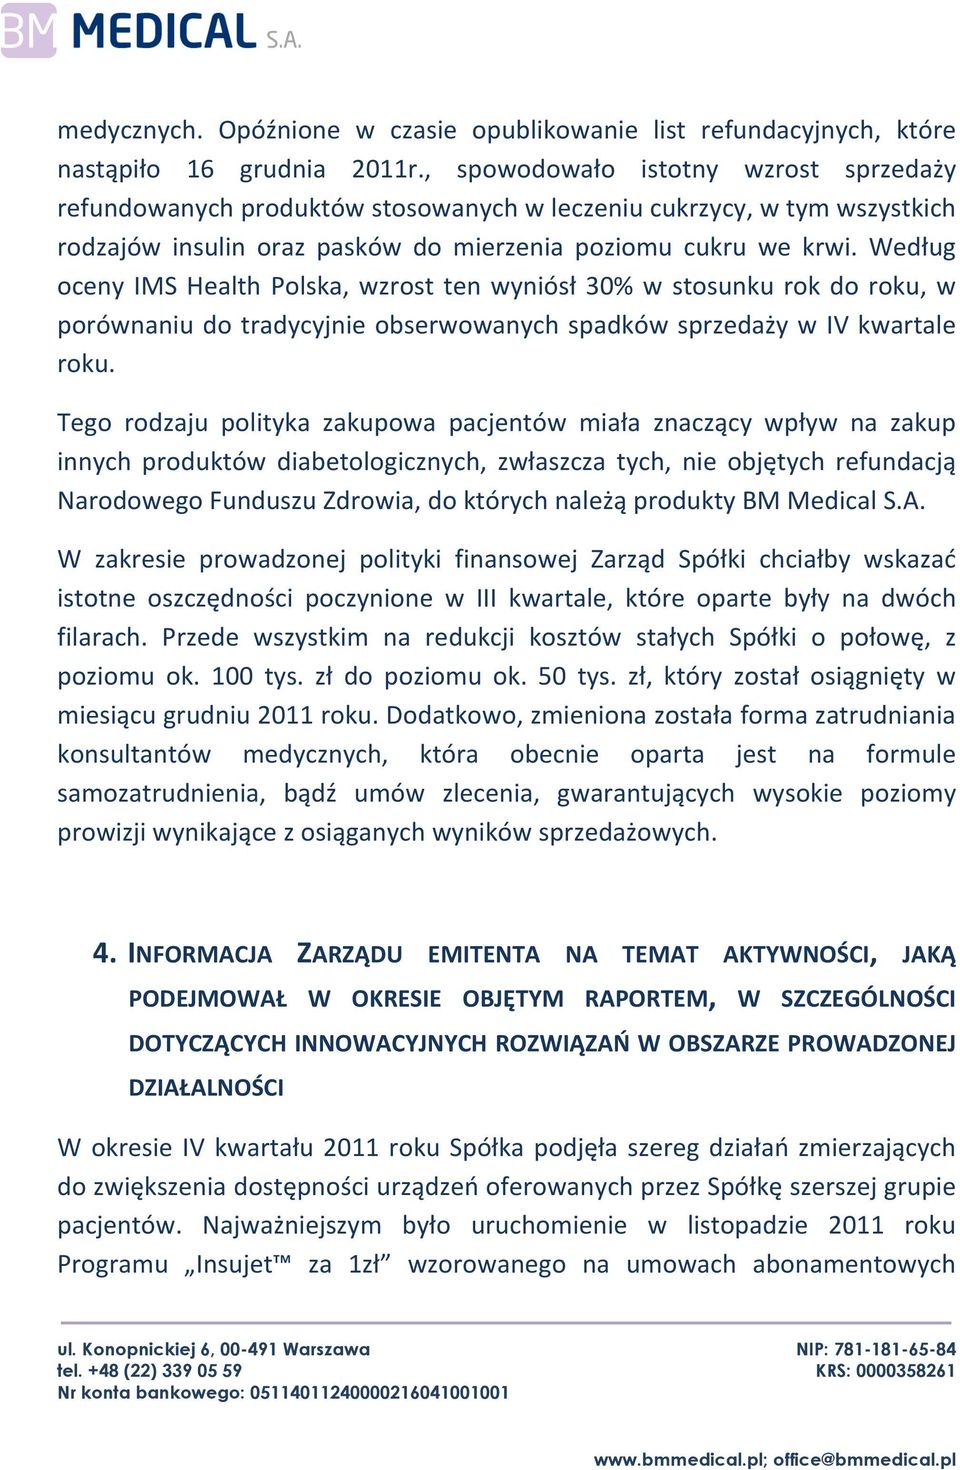 Według oceny IMS Health Polska, wzrost ten wyniósł 30% w stosunku rok do roku, w porównaniu do tradycyjnie obserwowanych spadków sprzedaży w IV kwartale roku.